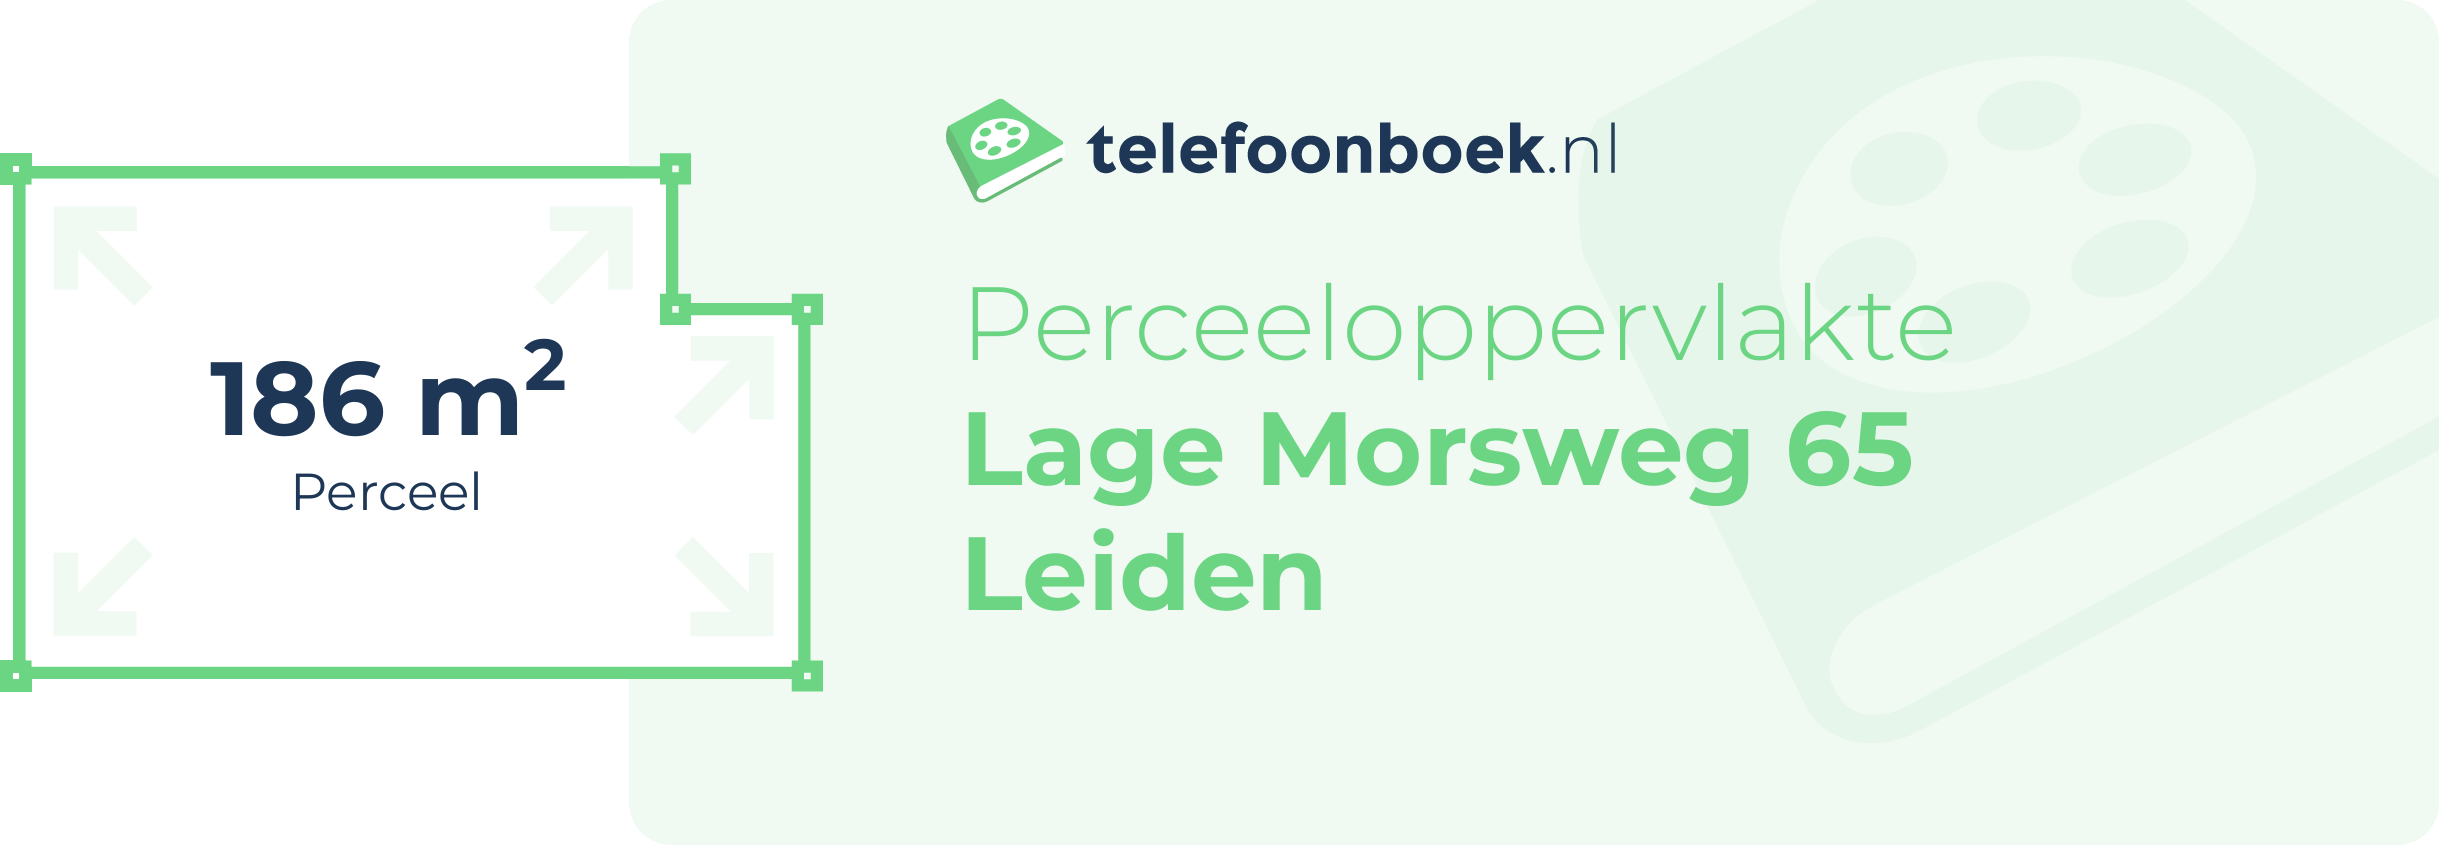 Perceeloppervlakte Lage Morsweg 65 Leiden